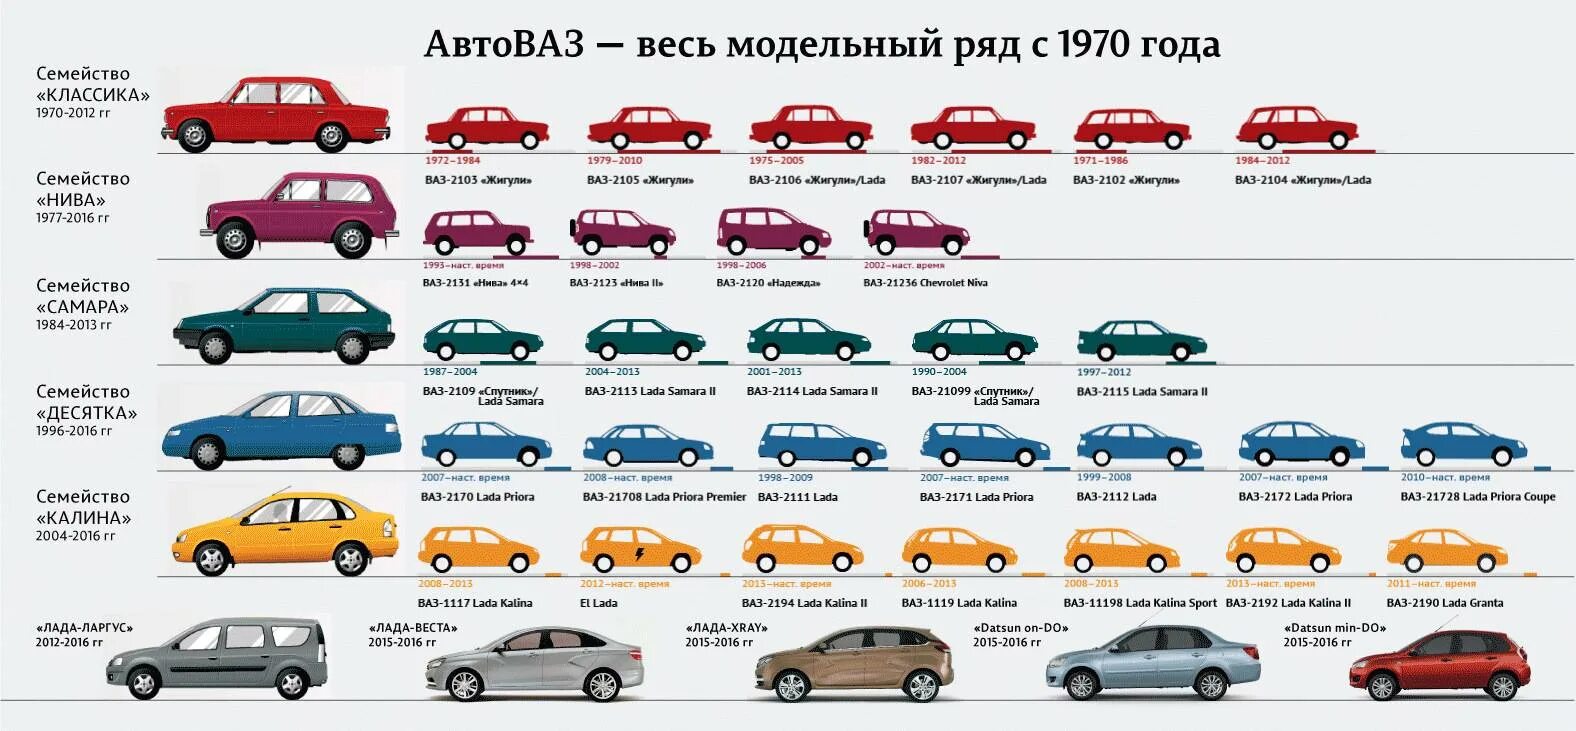 Тип кузова автомобиля 9. ВАЗ линейка моделей. Хронология автомобилей ВАЗ по годам. Модельный ряд ВАЗ 2101-2115.